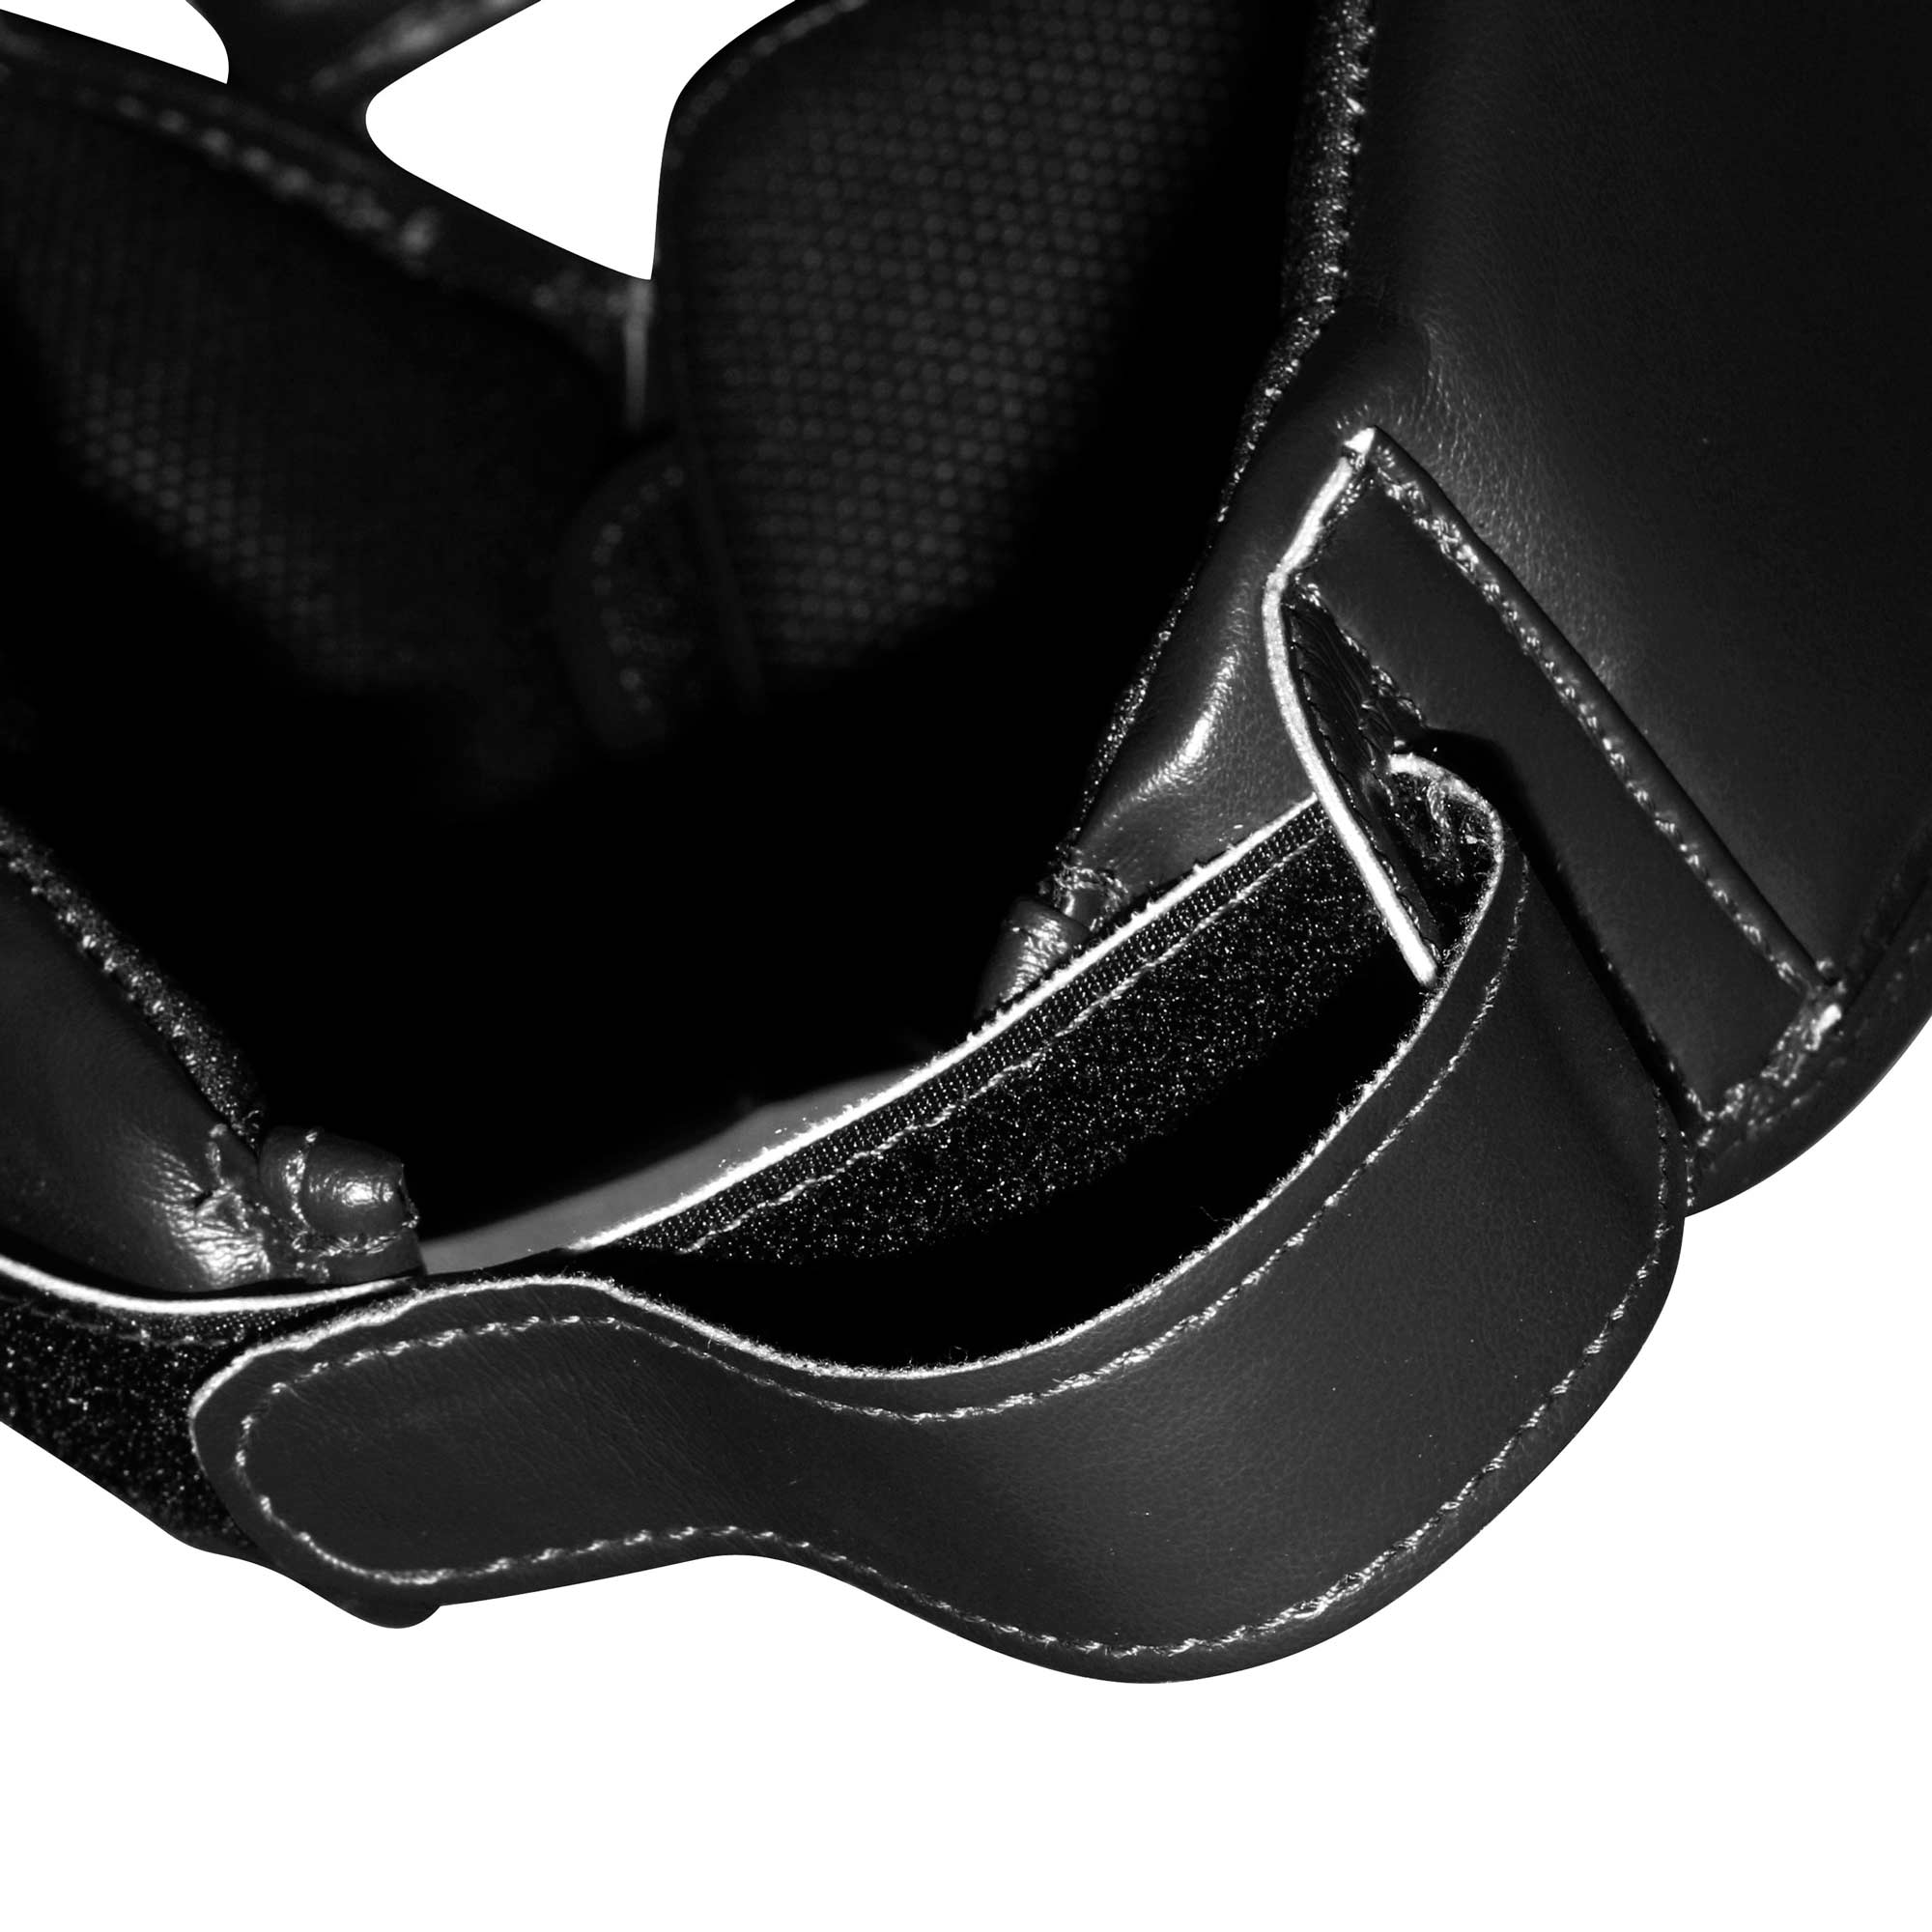 adidas Kopfschutz Hybrid 50 schwarz, adiH50HG